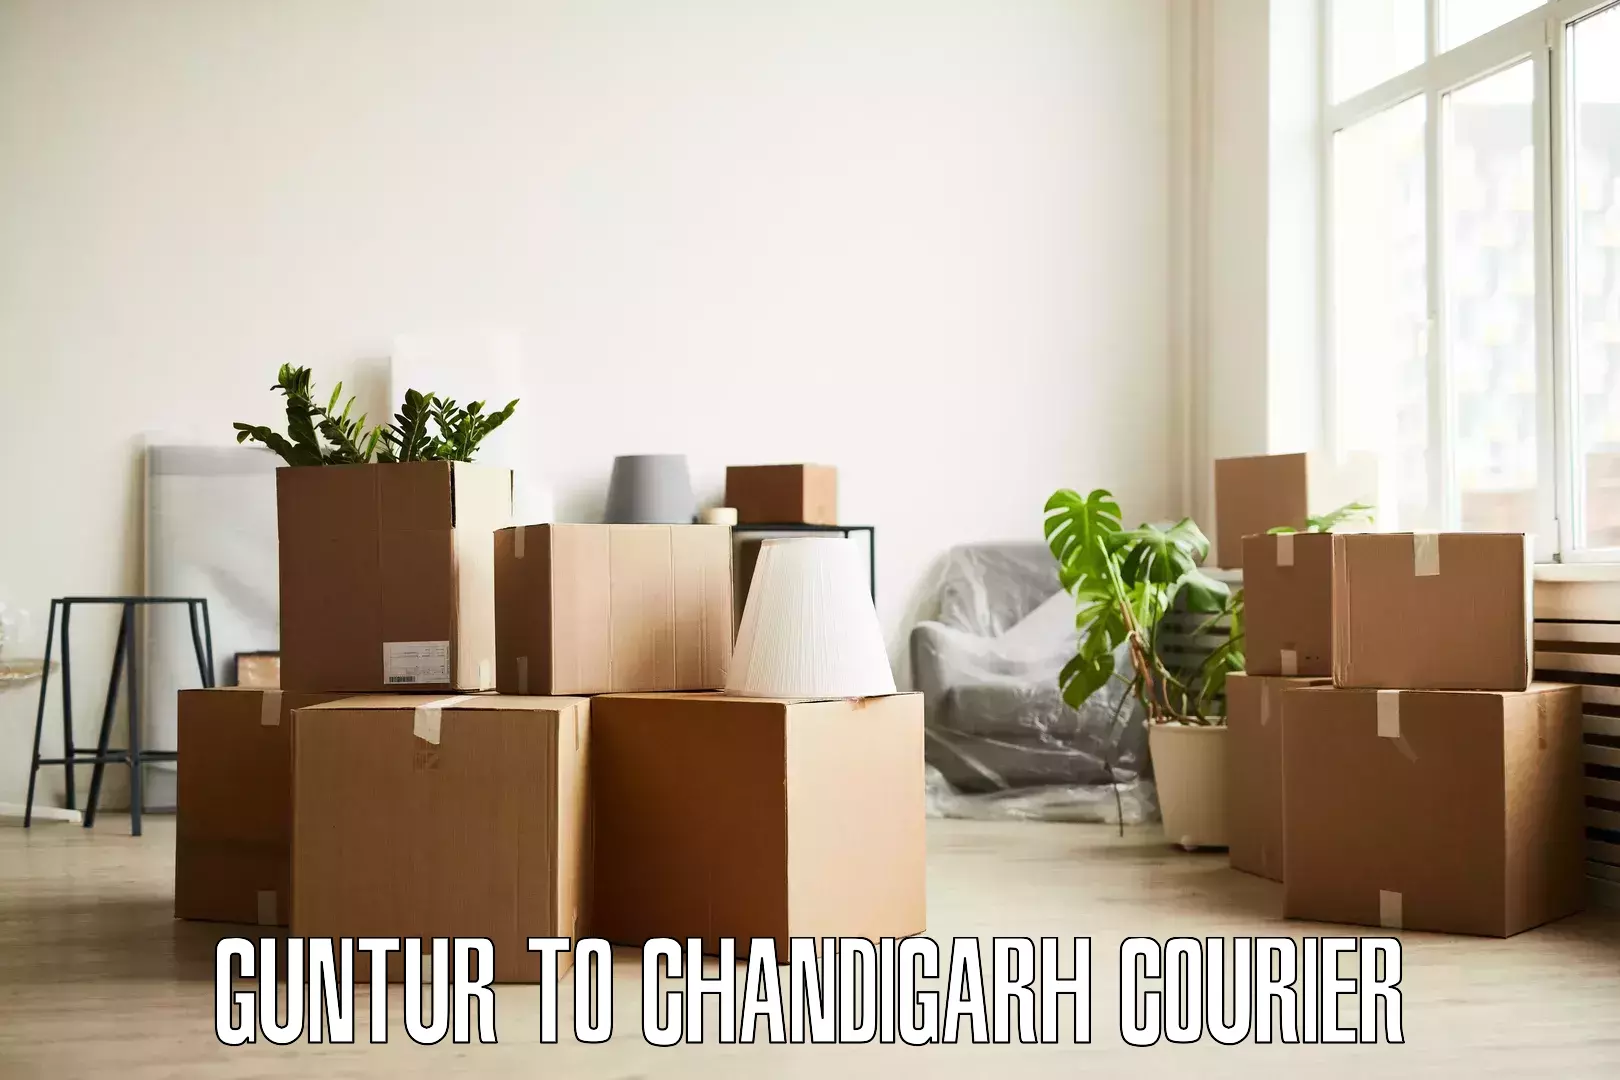 Efficient relocation services Guntur to Chandigarh